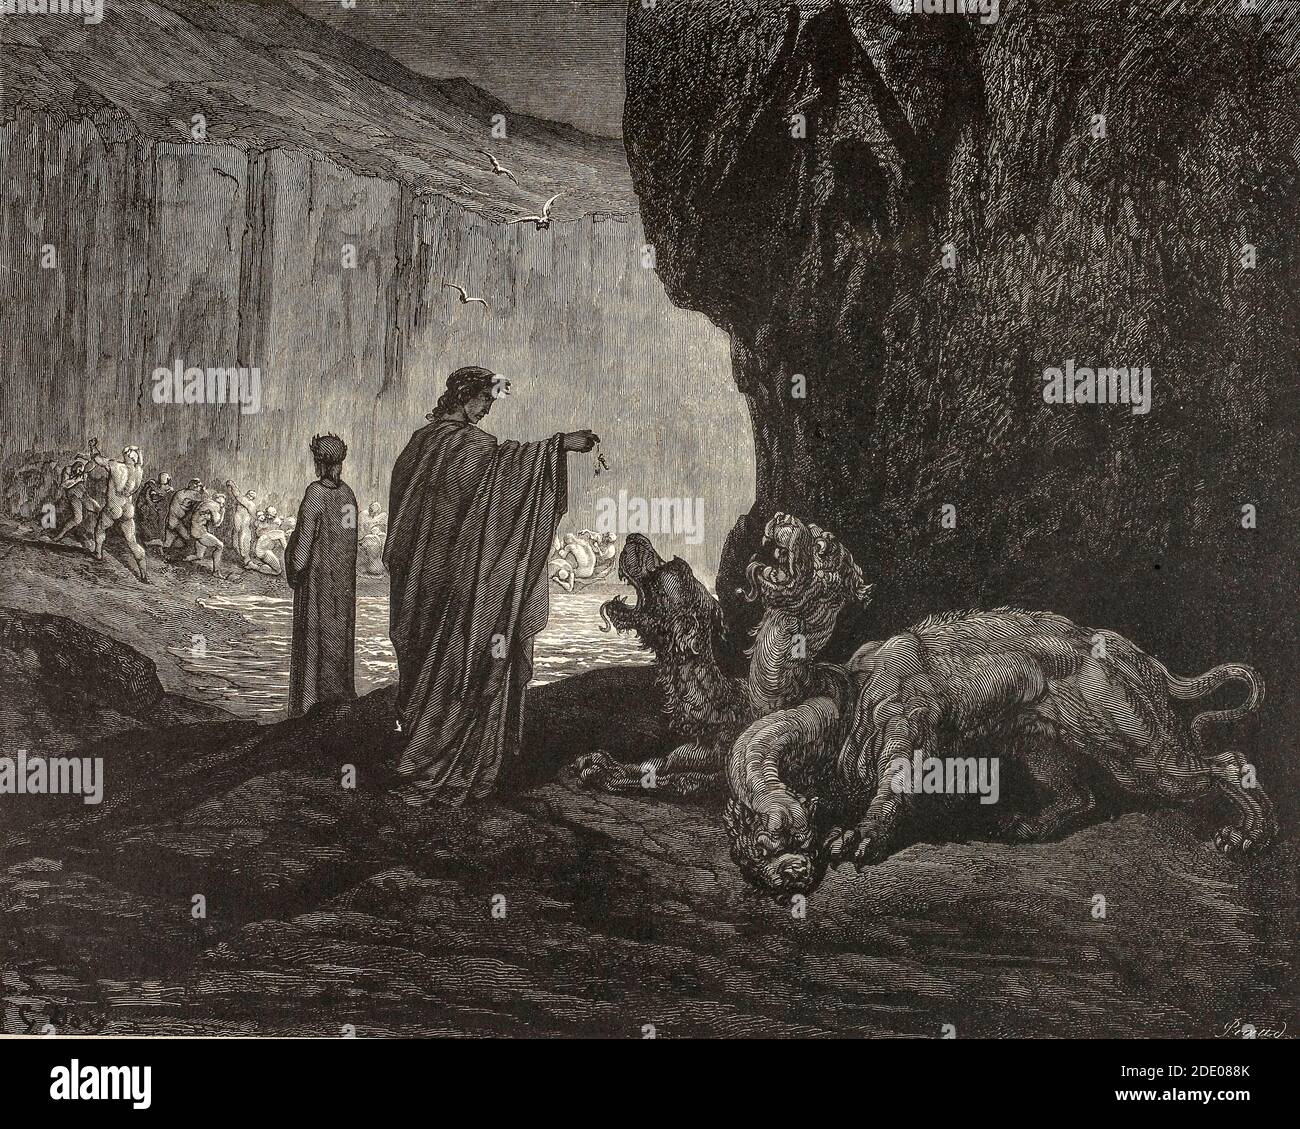 Dante Divina Commedia - Inferno - Dante incontra Cerberus, personaggio della mitologia greca, uno dei mostri che custodisce l'ingresso al mondo sotterraneo su cui regnò il dio Ade - canto VI - illustrazione di Gustave Dorè Foto Stock